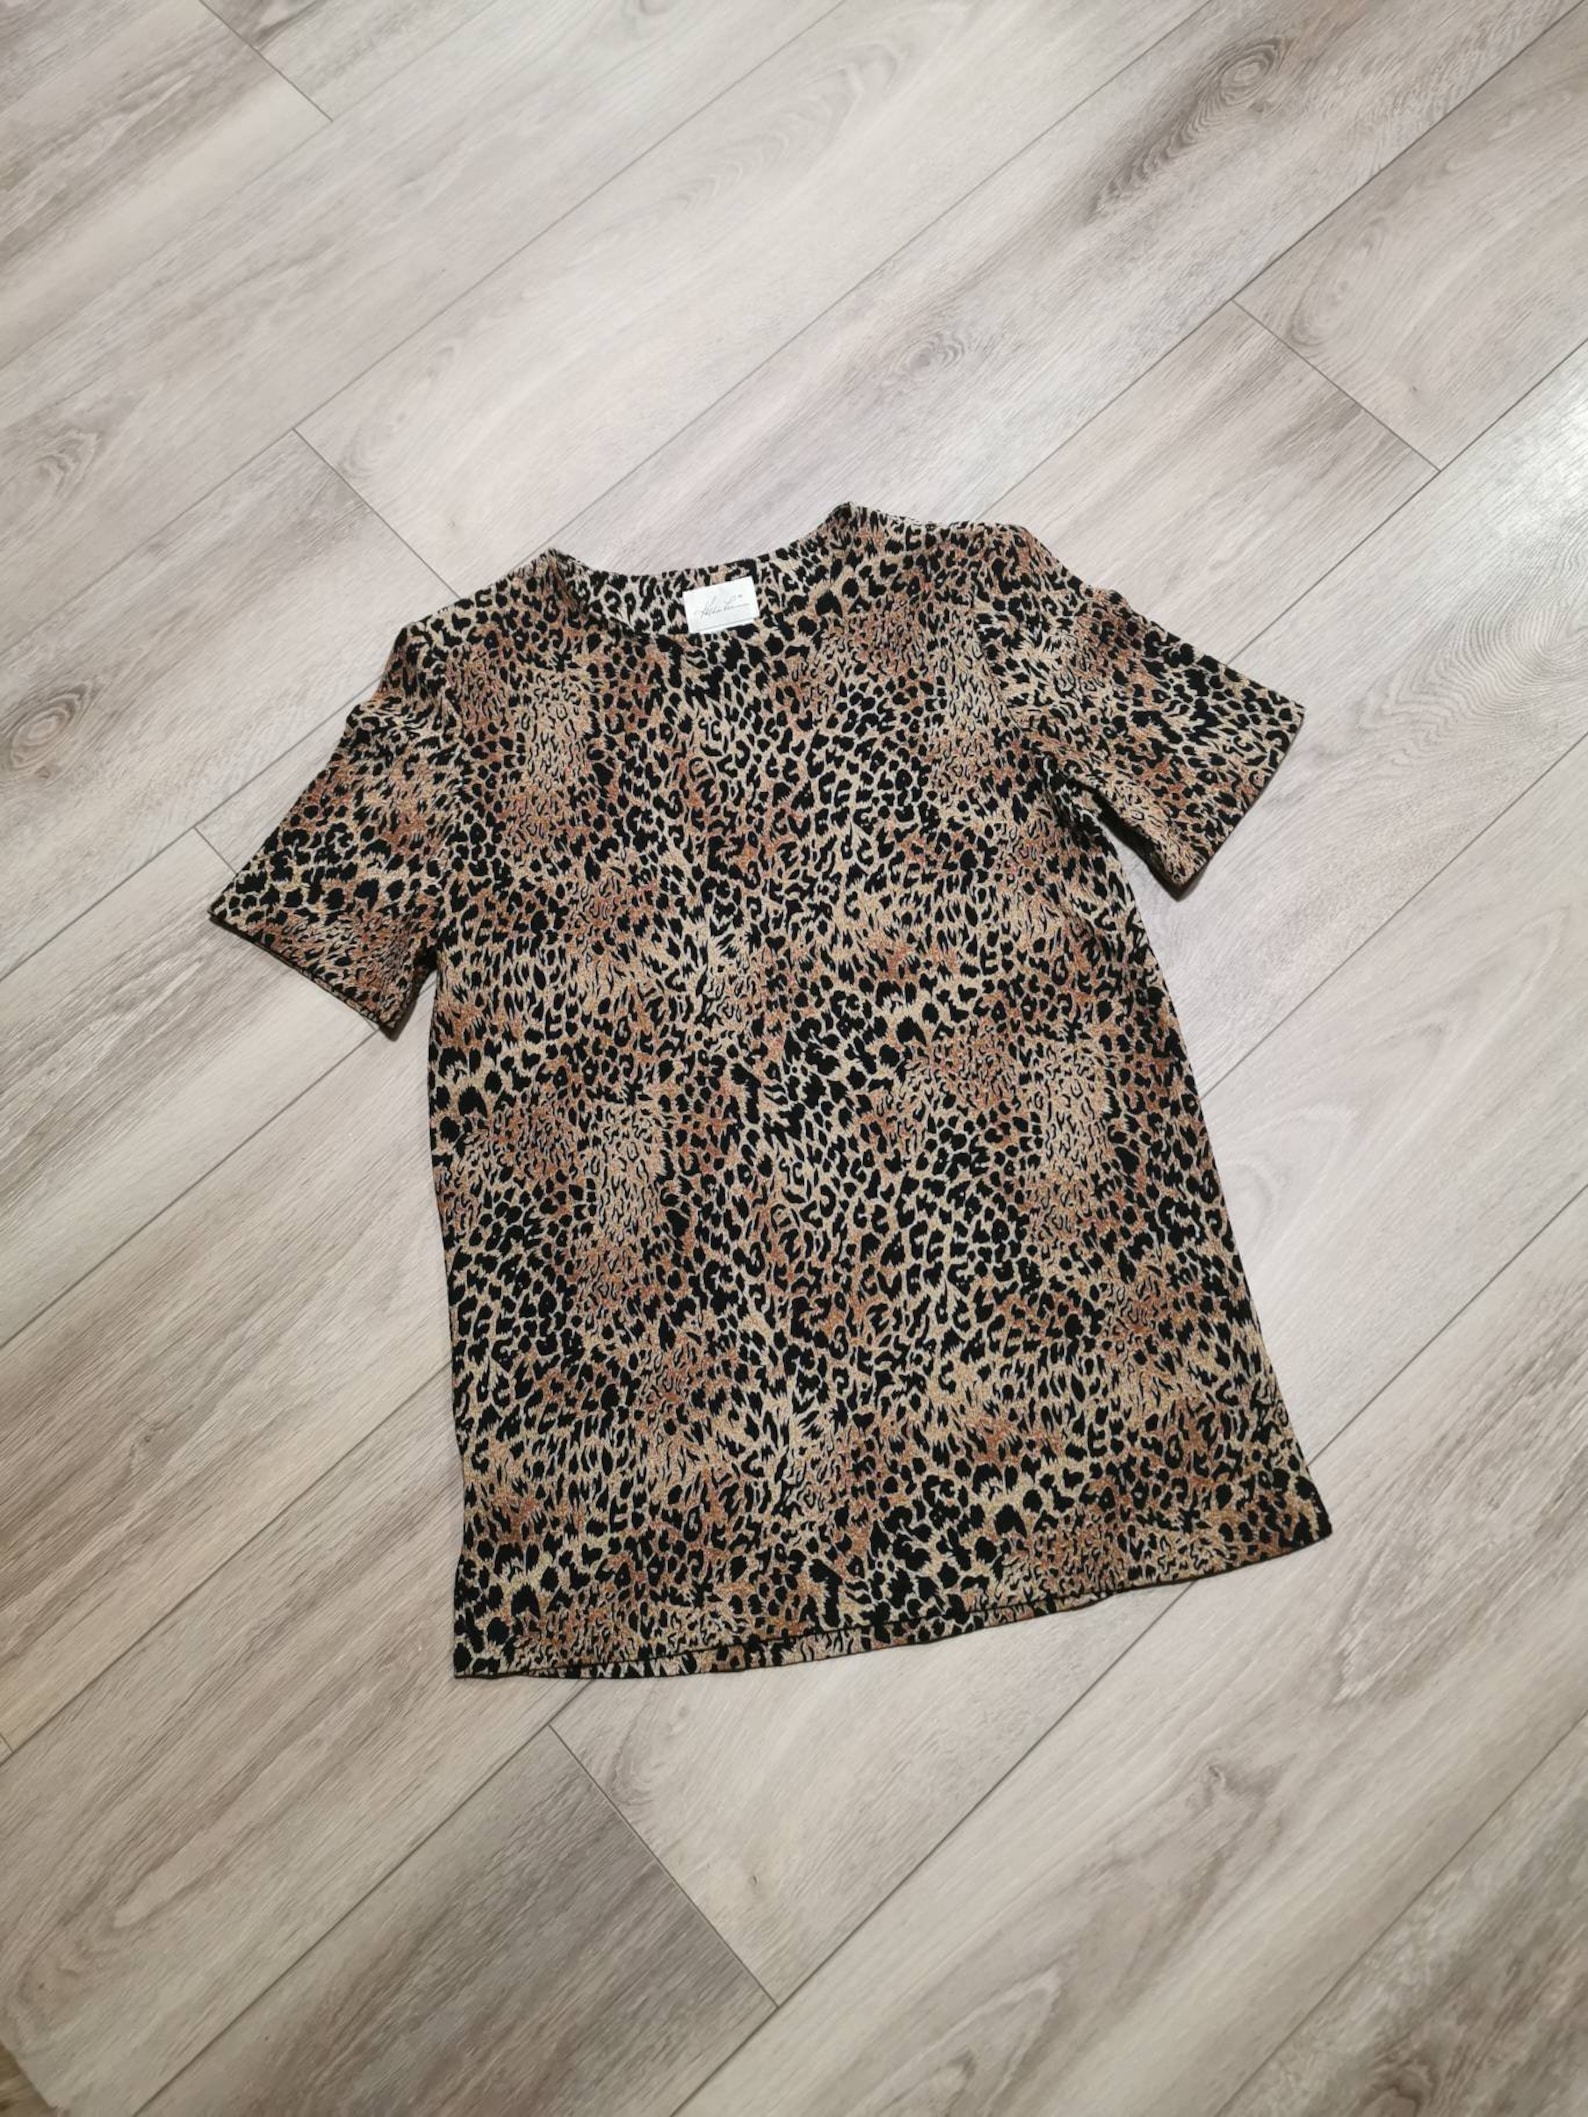 Gorgeous Vintage Kathie Lee Leopard Shirt Vintage 80's | Etsy